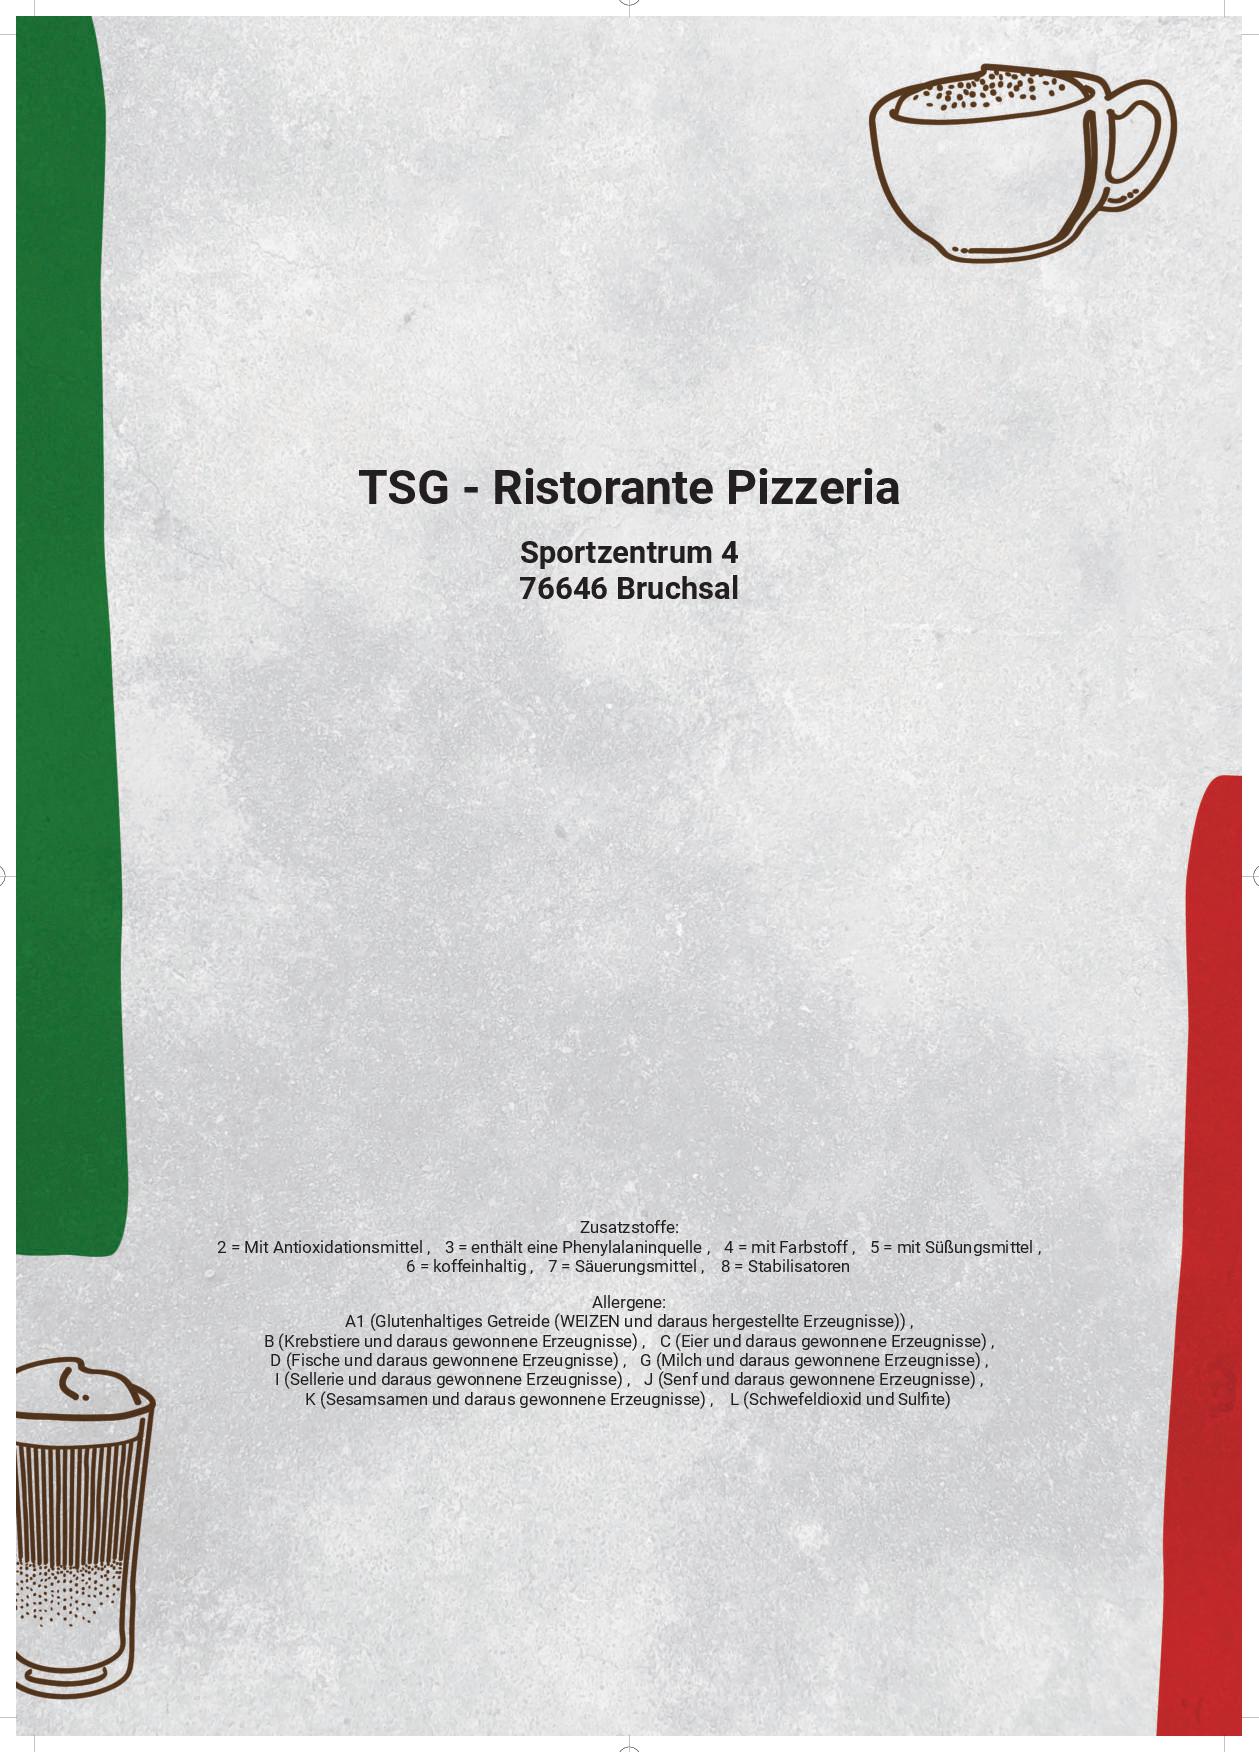 1005217 TSG Ristorante Pizzeria compressed 011